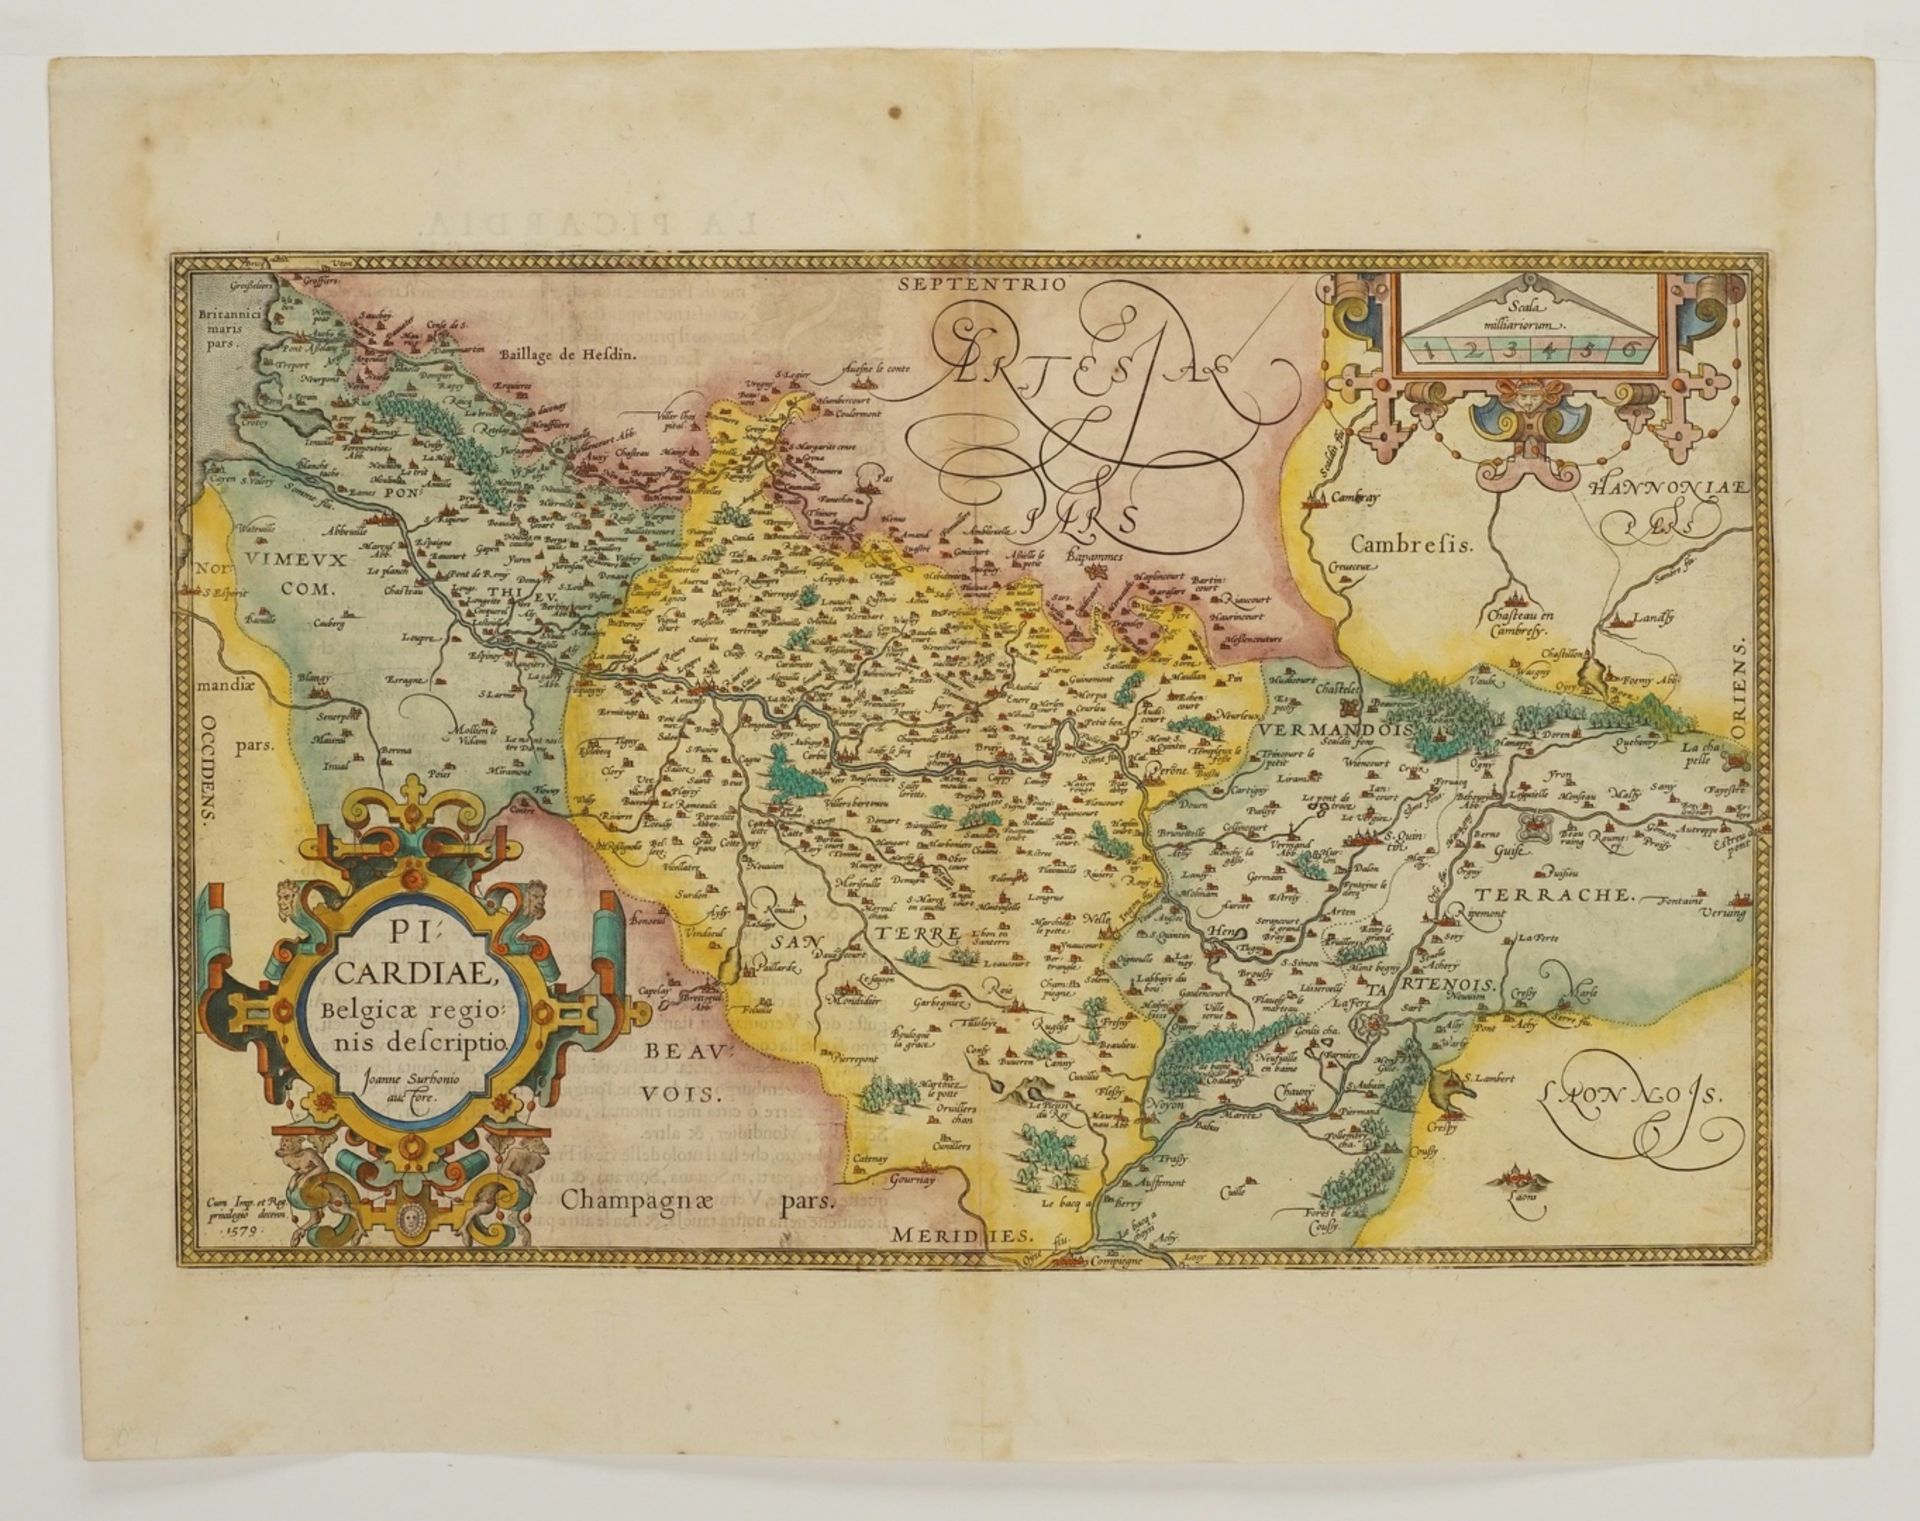 Abraham Ortelius, ""Picardiae, Belgicae regionis descriptio" (Karte der Picardie)" - Image 3 of 4